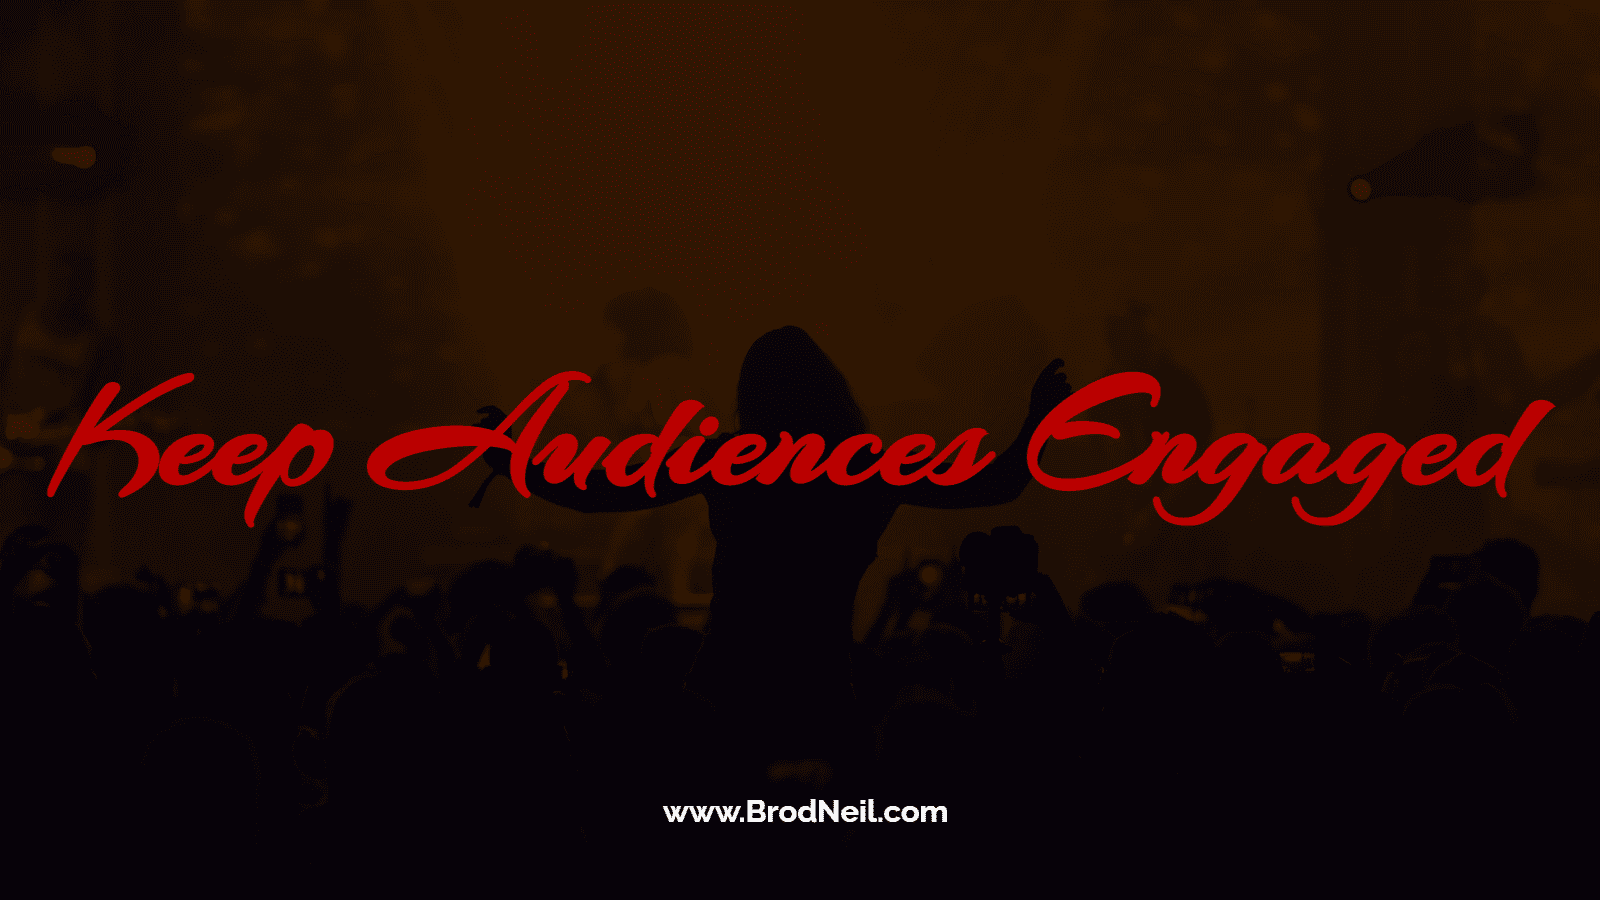 keep audiences engaged